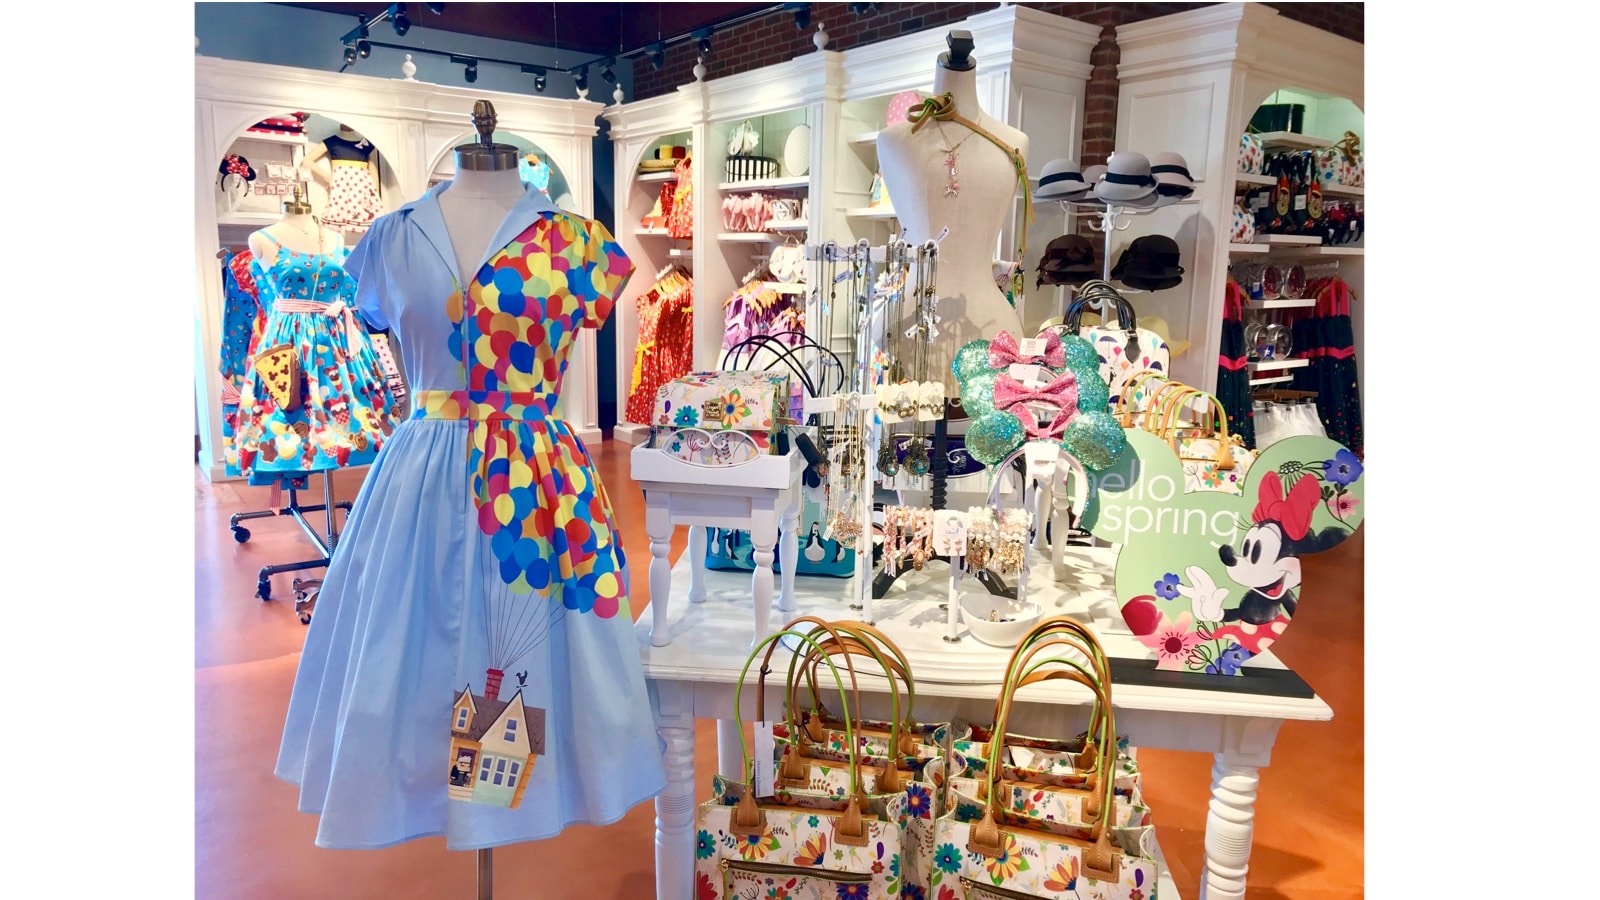 Dress To Impress At Marketplace Co Op At Disney Springs April 26 28 Disney Parks Blog